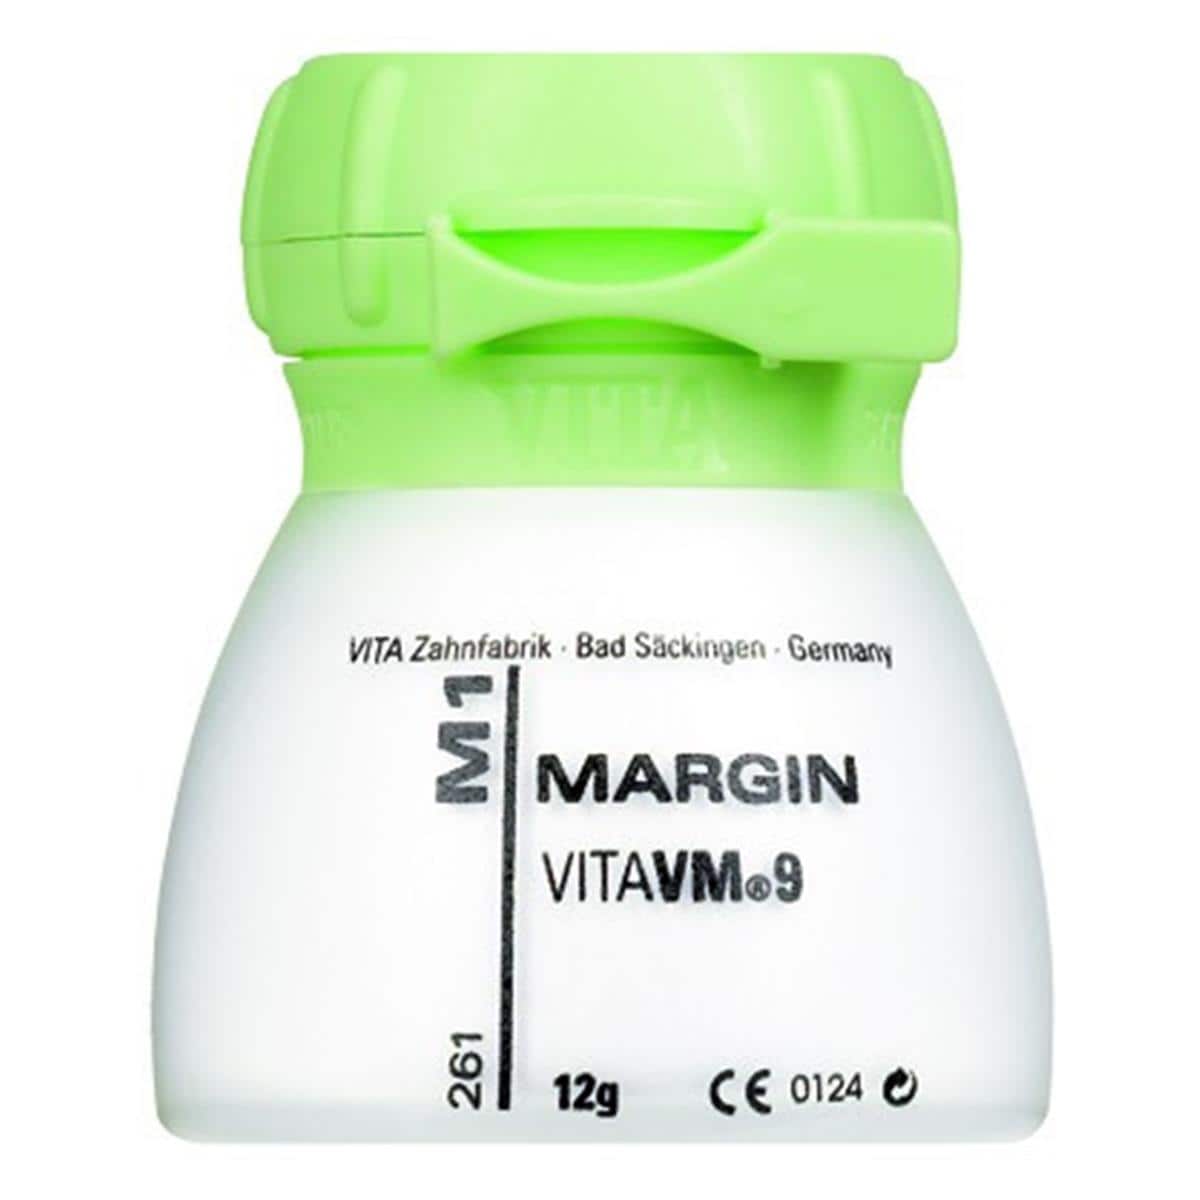 VM9 VITA - Margin - M1 - Le pot de 12 g